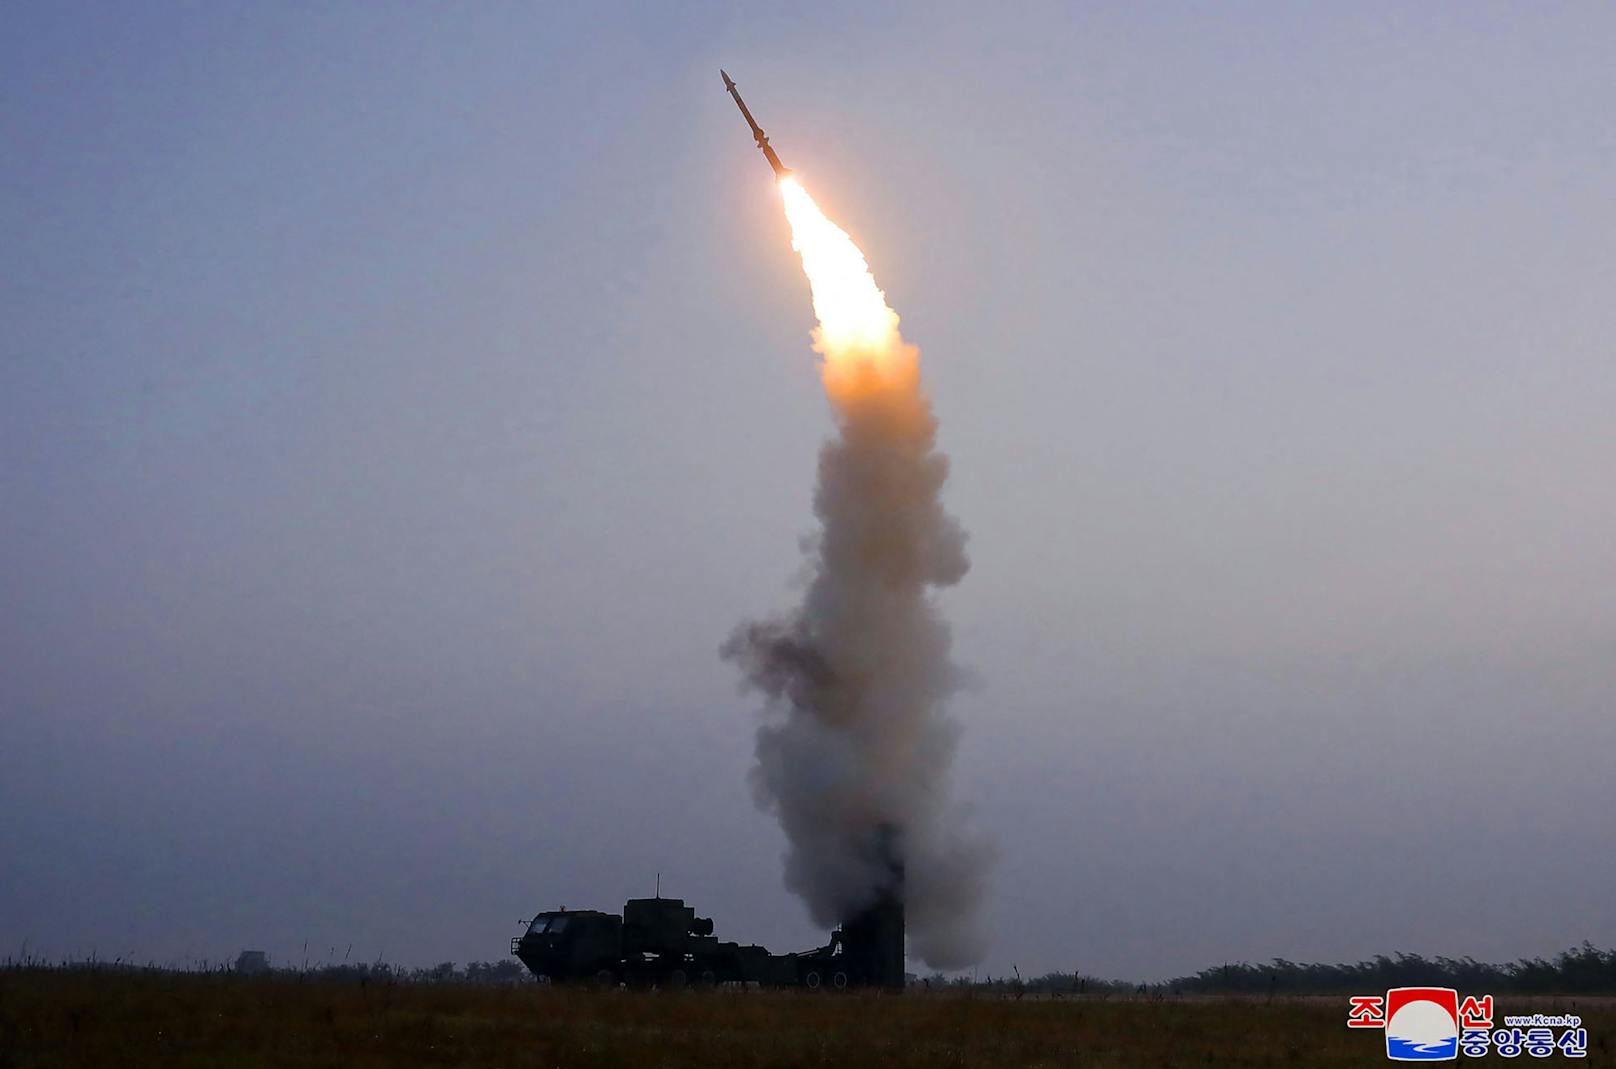 Hyperschall-Raketen sind extrem schnell und flexibel, was ihre Zerstörung durch Raketenabwehrsysteme stark erschwert.